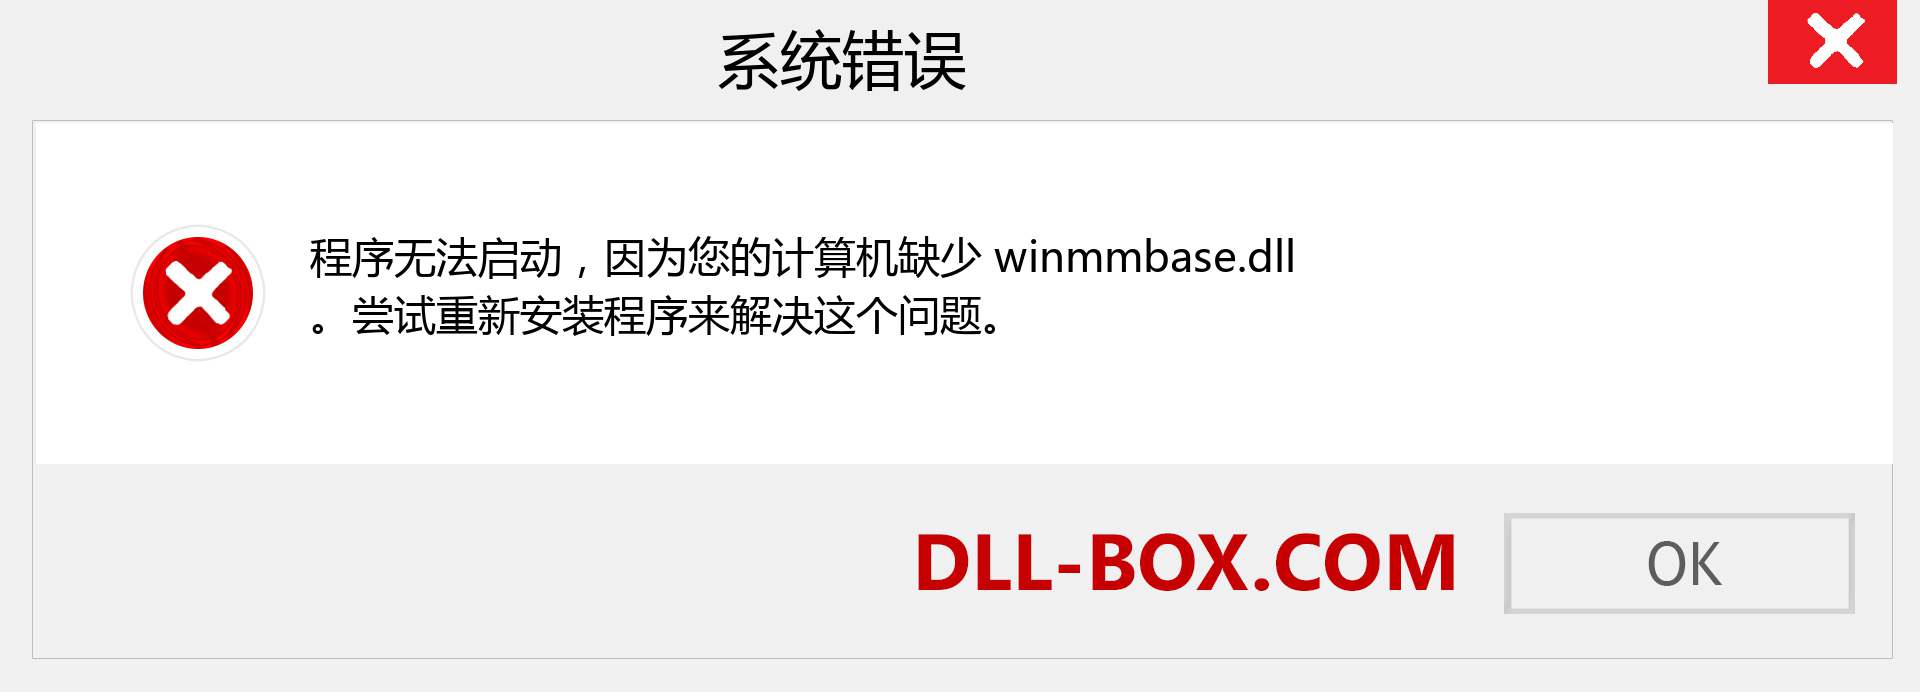 winmmbase.dll 文件丢失？。 适用于 Windows 7、8、10 的下载 - 修复 Windows、照片、图像上的 winmmbase dll 丢失错误